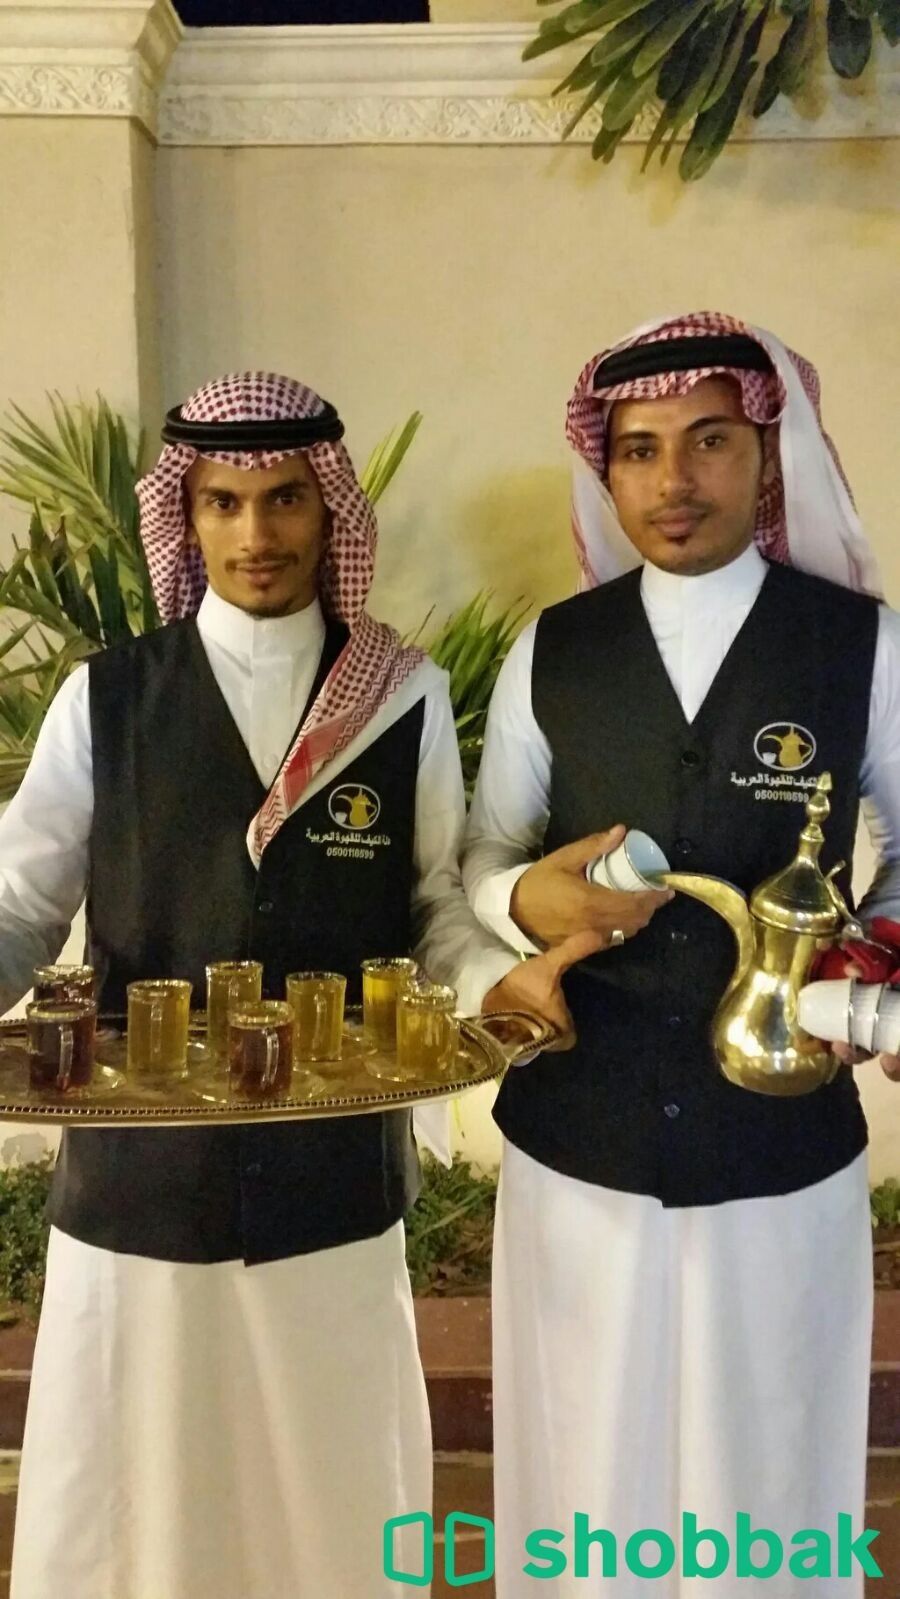 قهوجيين صبابين مباشرين قهوة وشاي جده0549152300 Shobbak Saudi Arabia